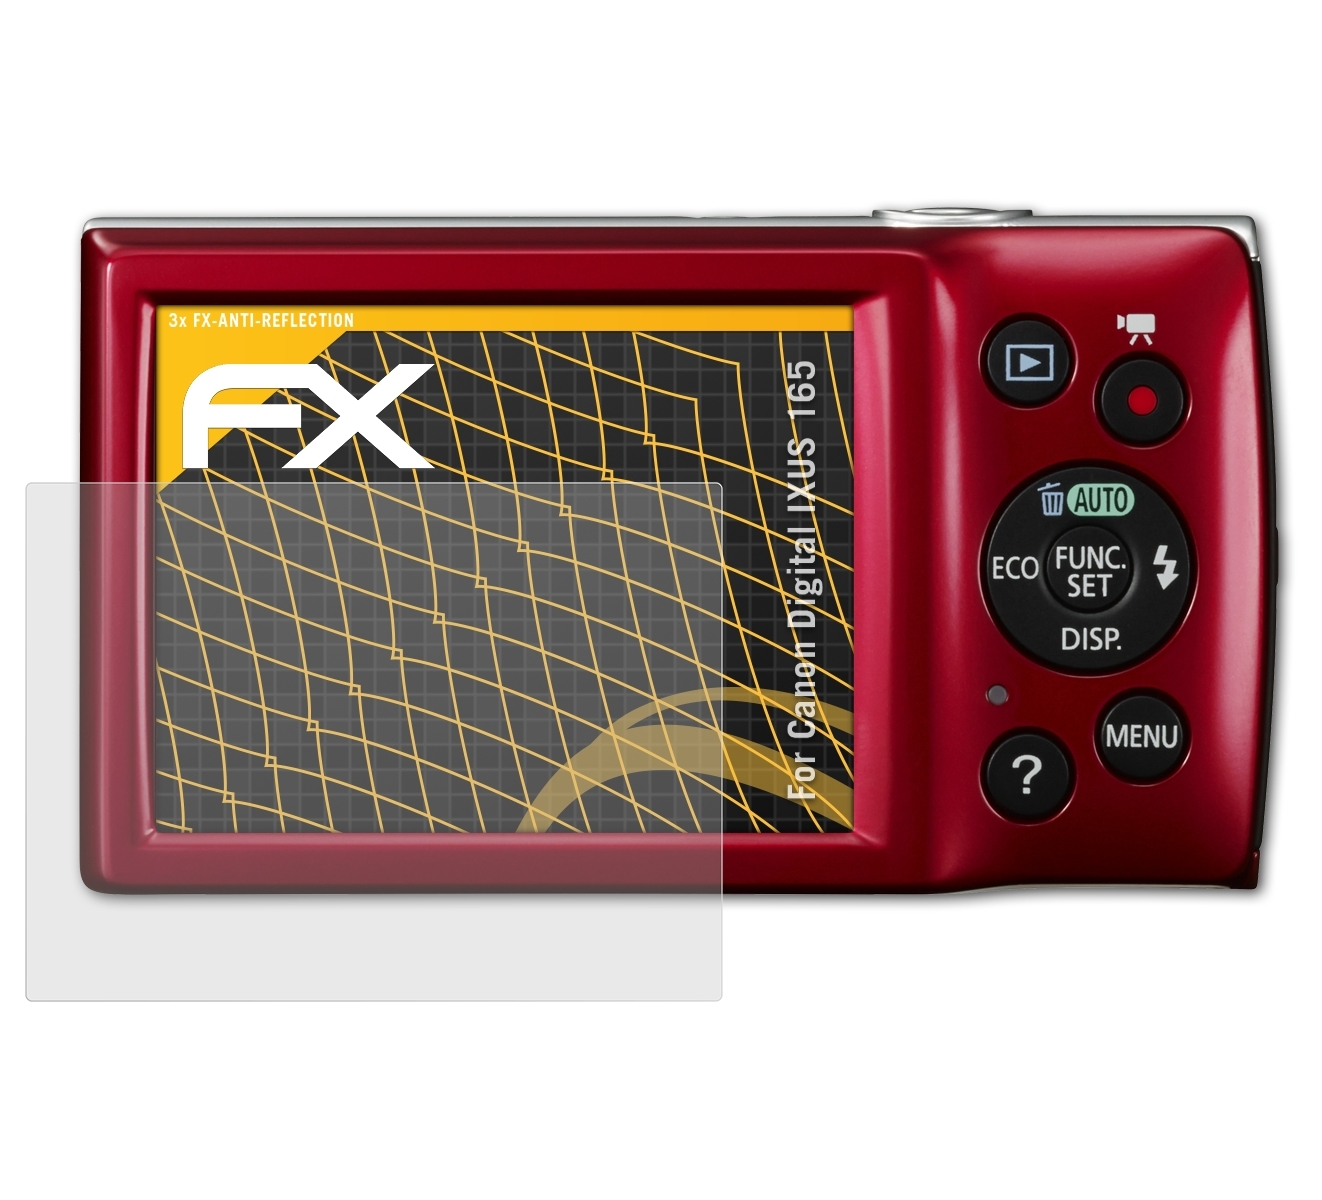 165) Digital IXUS 3x ATFOLIX Displayschutz(für FX-Antireflex Canon